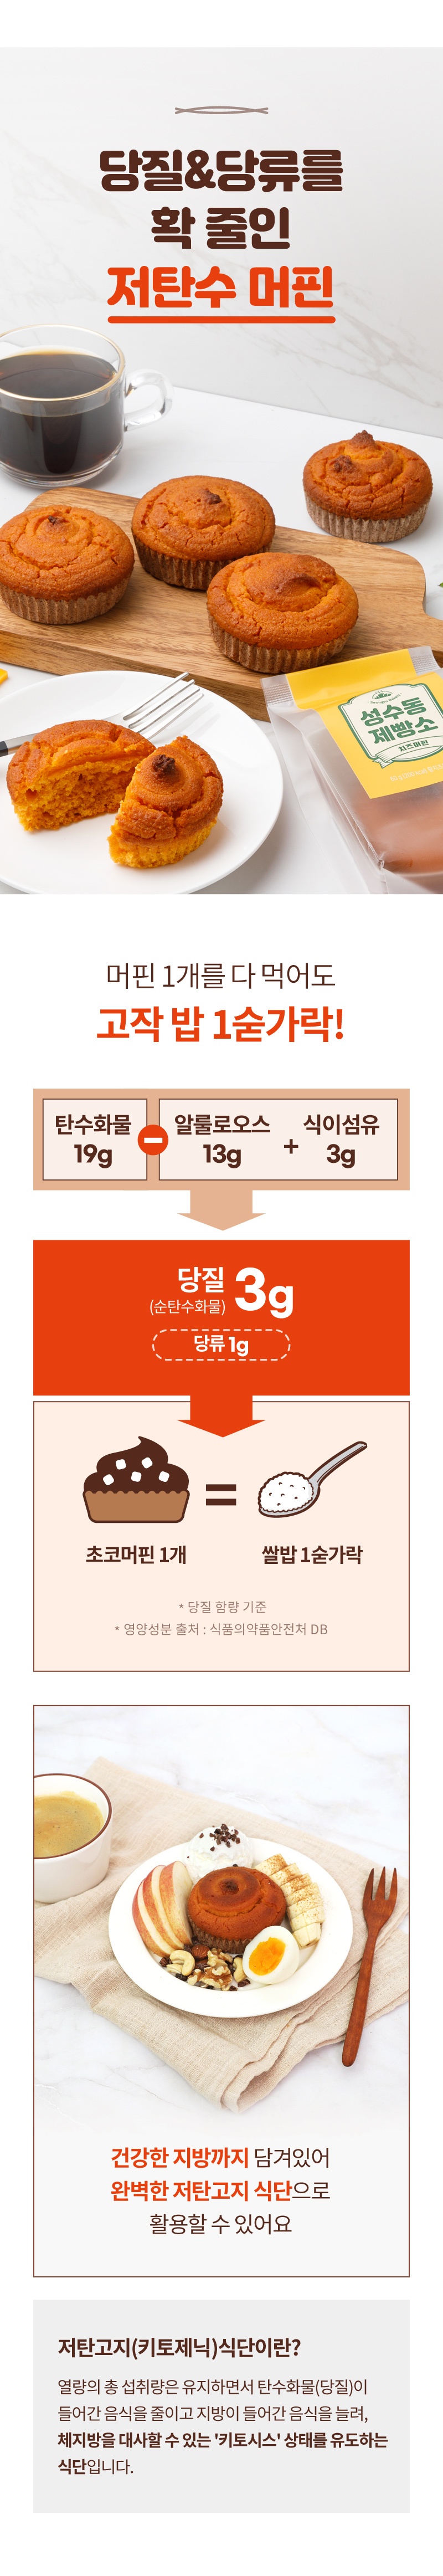 성수동 제빵소 머핀 체험단 모집 (10.29~11.11)